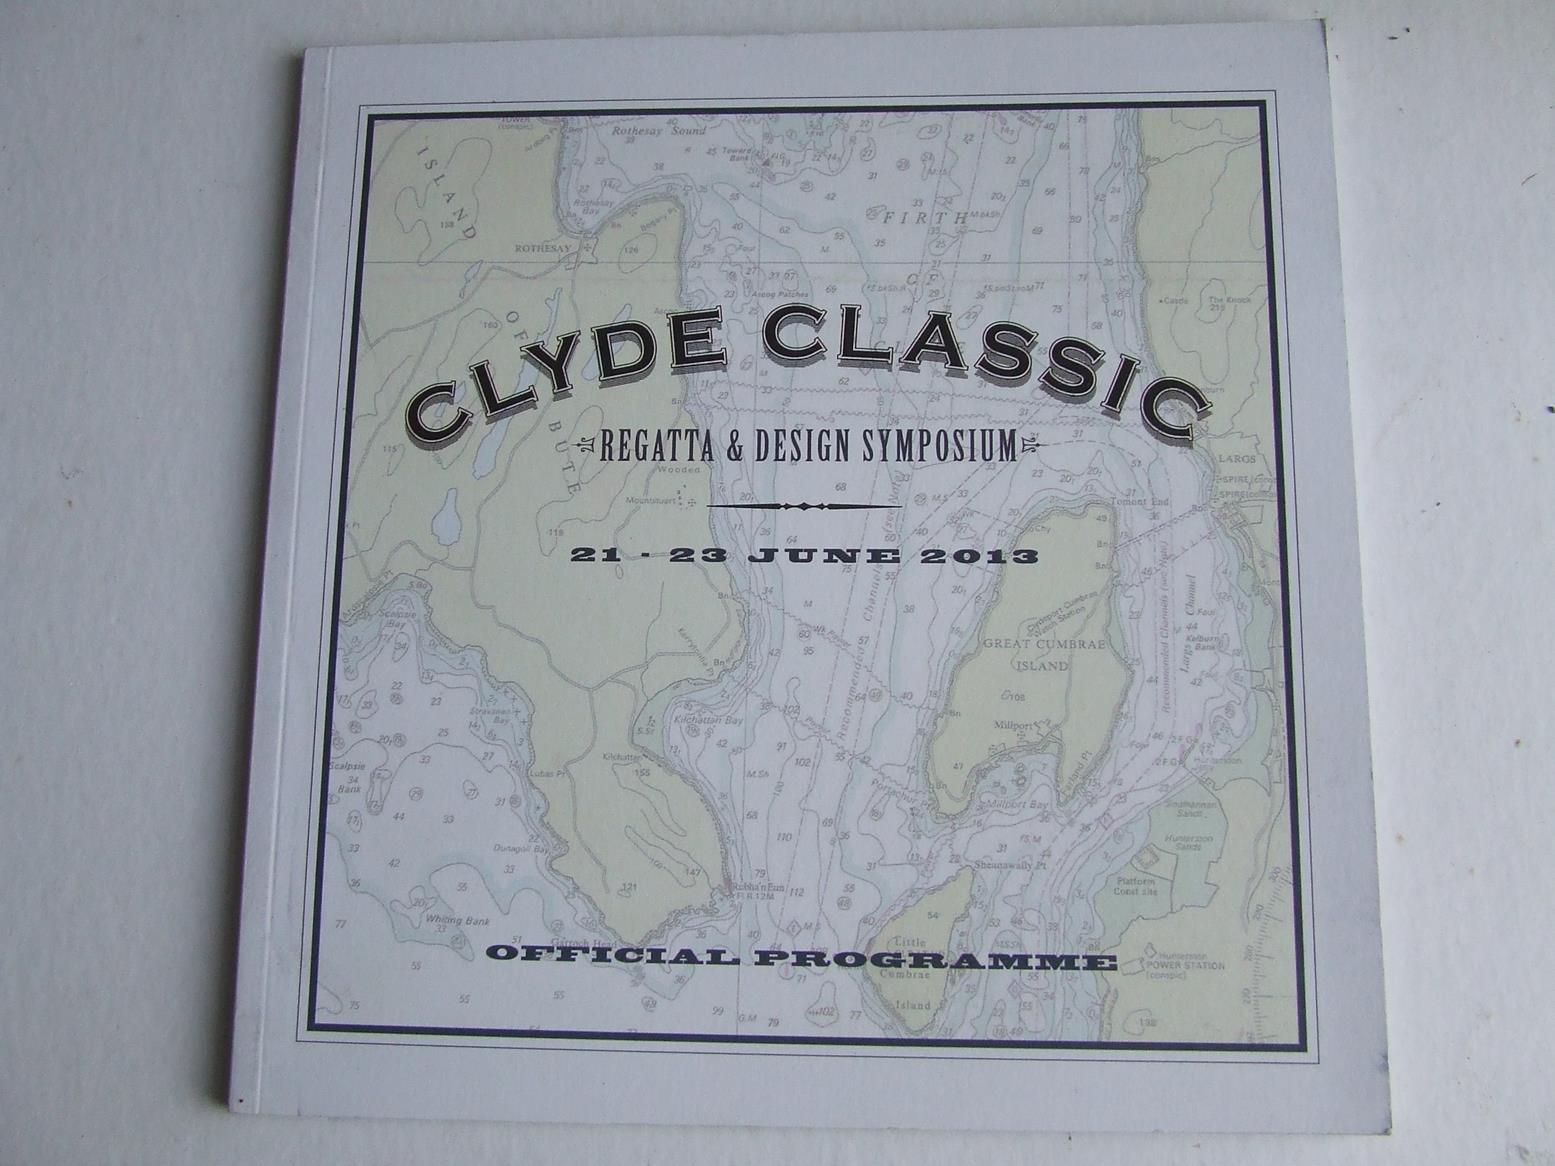 Clyde Classic, regatta & design symposium, 21-23 June 1913